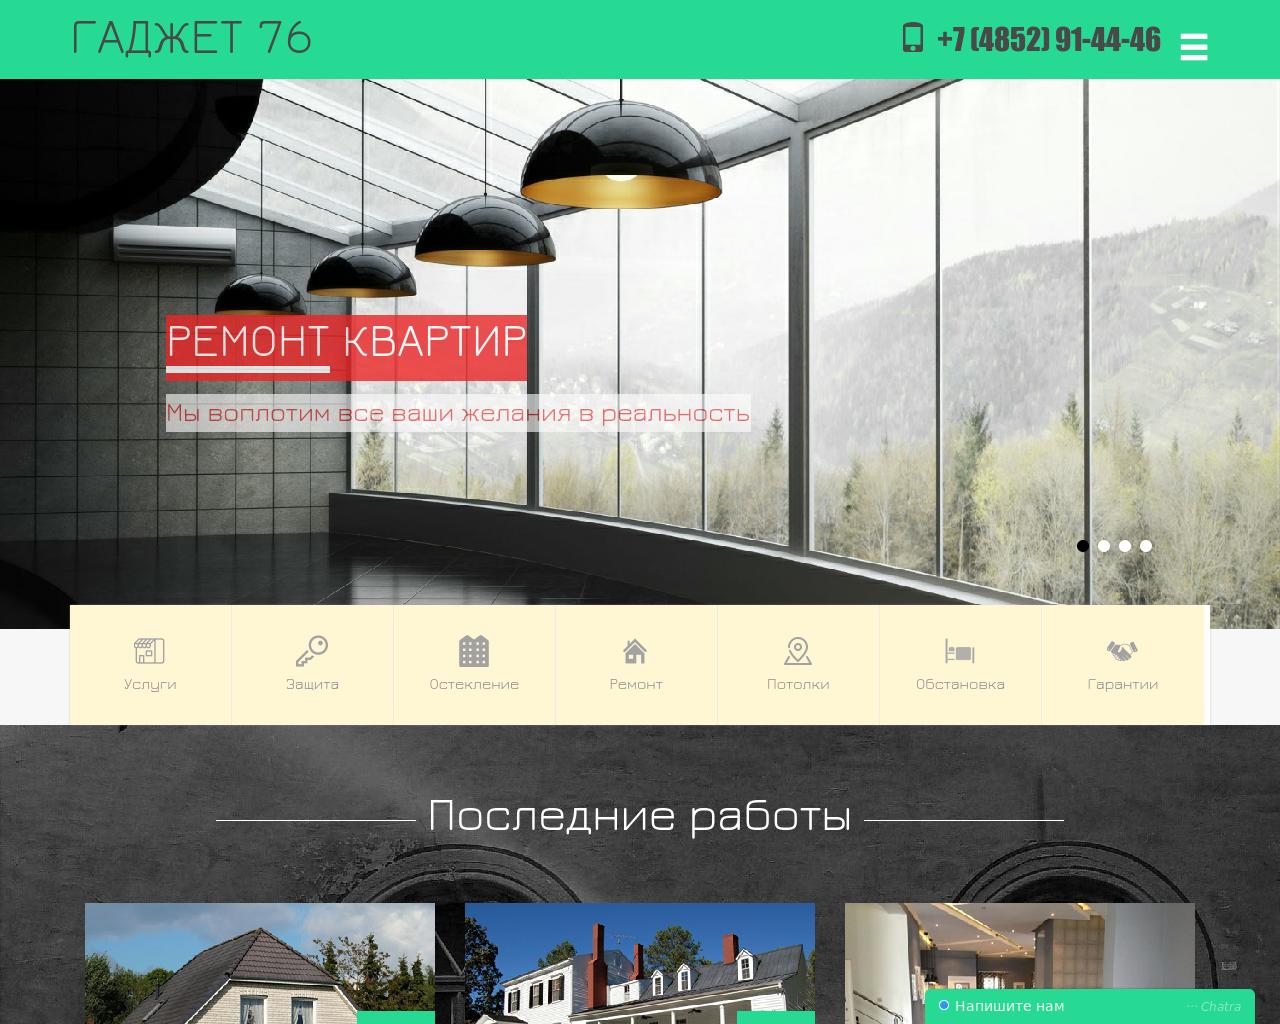 Изображение сайта gadzhet76.ru в разрешении 1280x1024